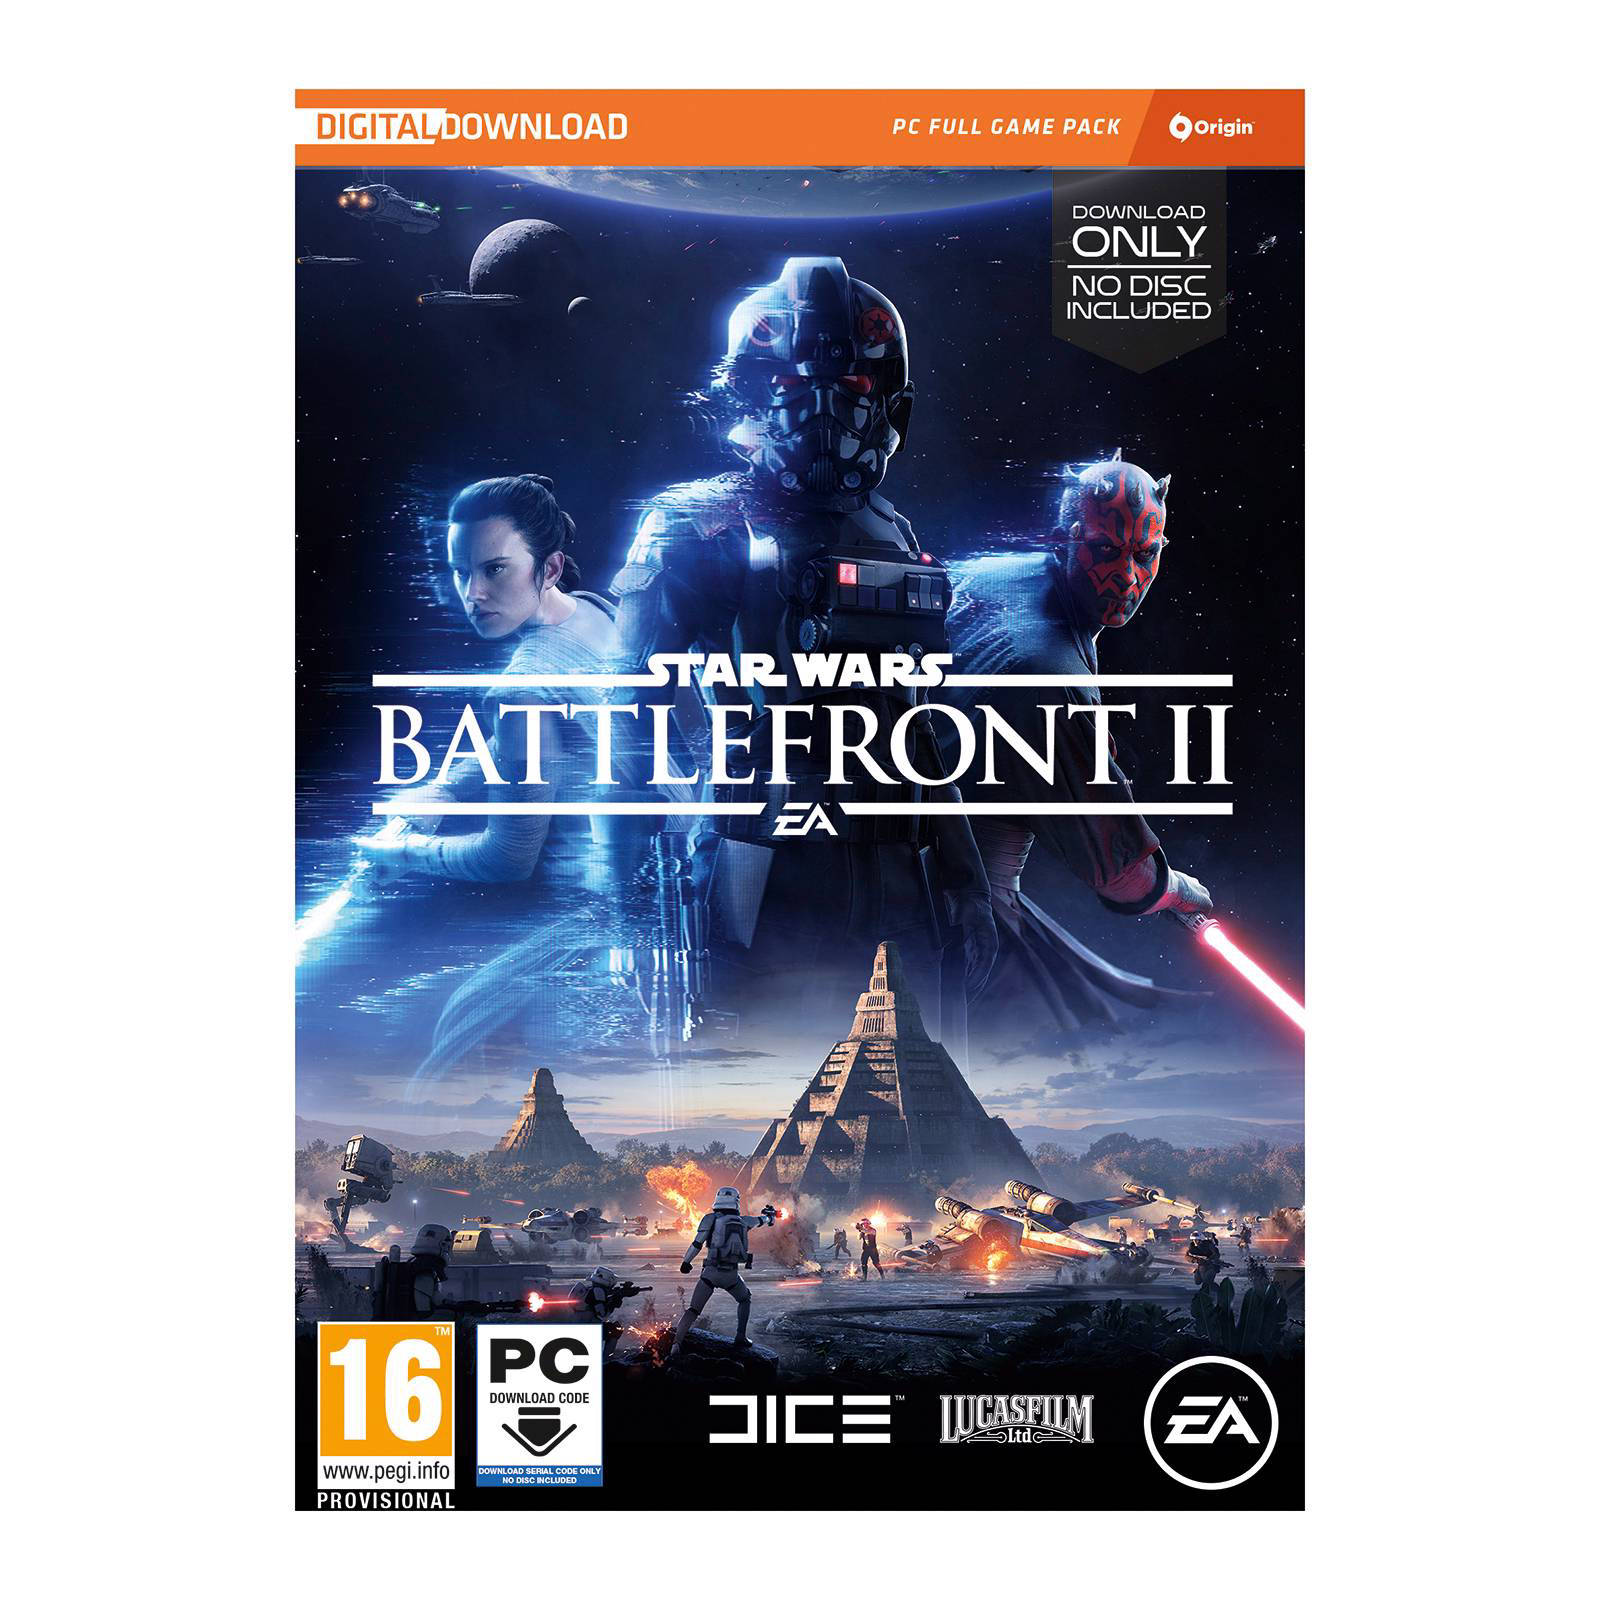 star wars battlefront 2 digital download pc